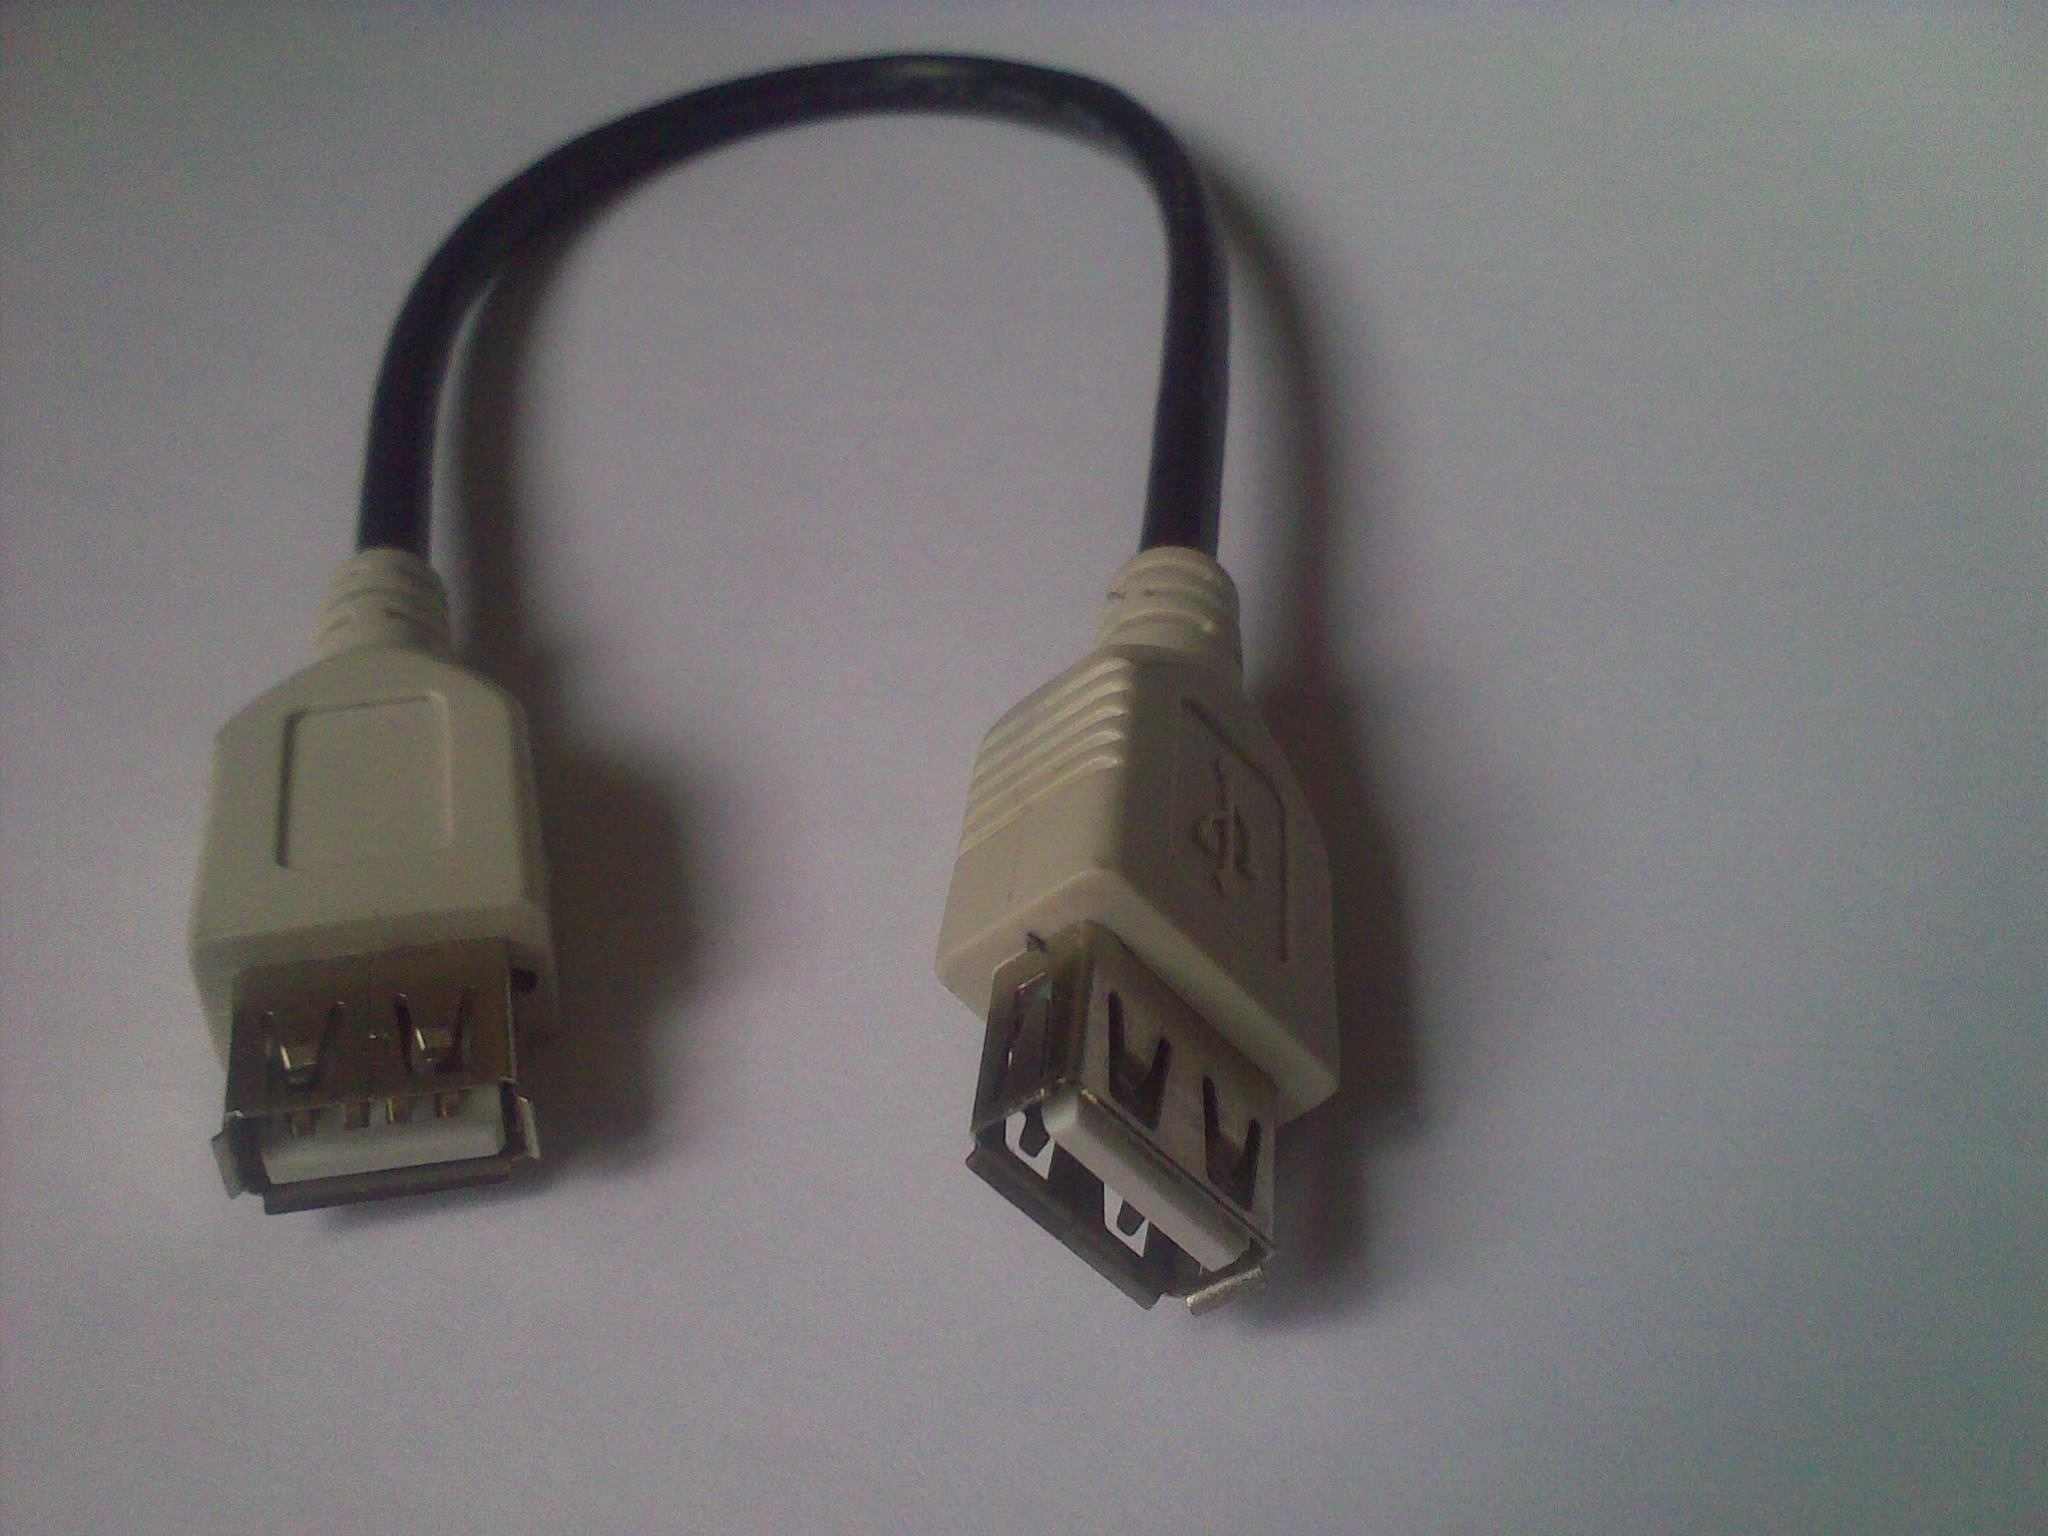 网线 串口线 打印线 USB/VGA/HDMI线 端子线等等,可订制